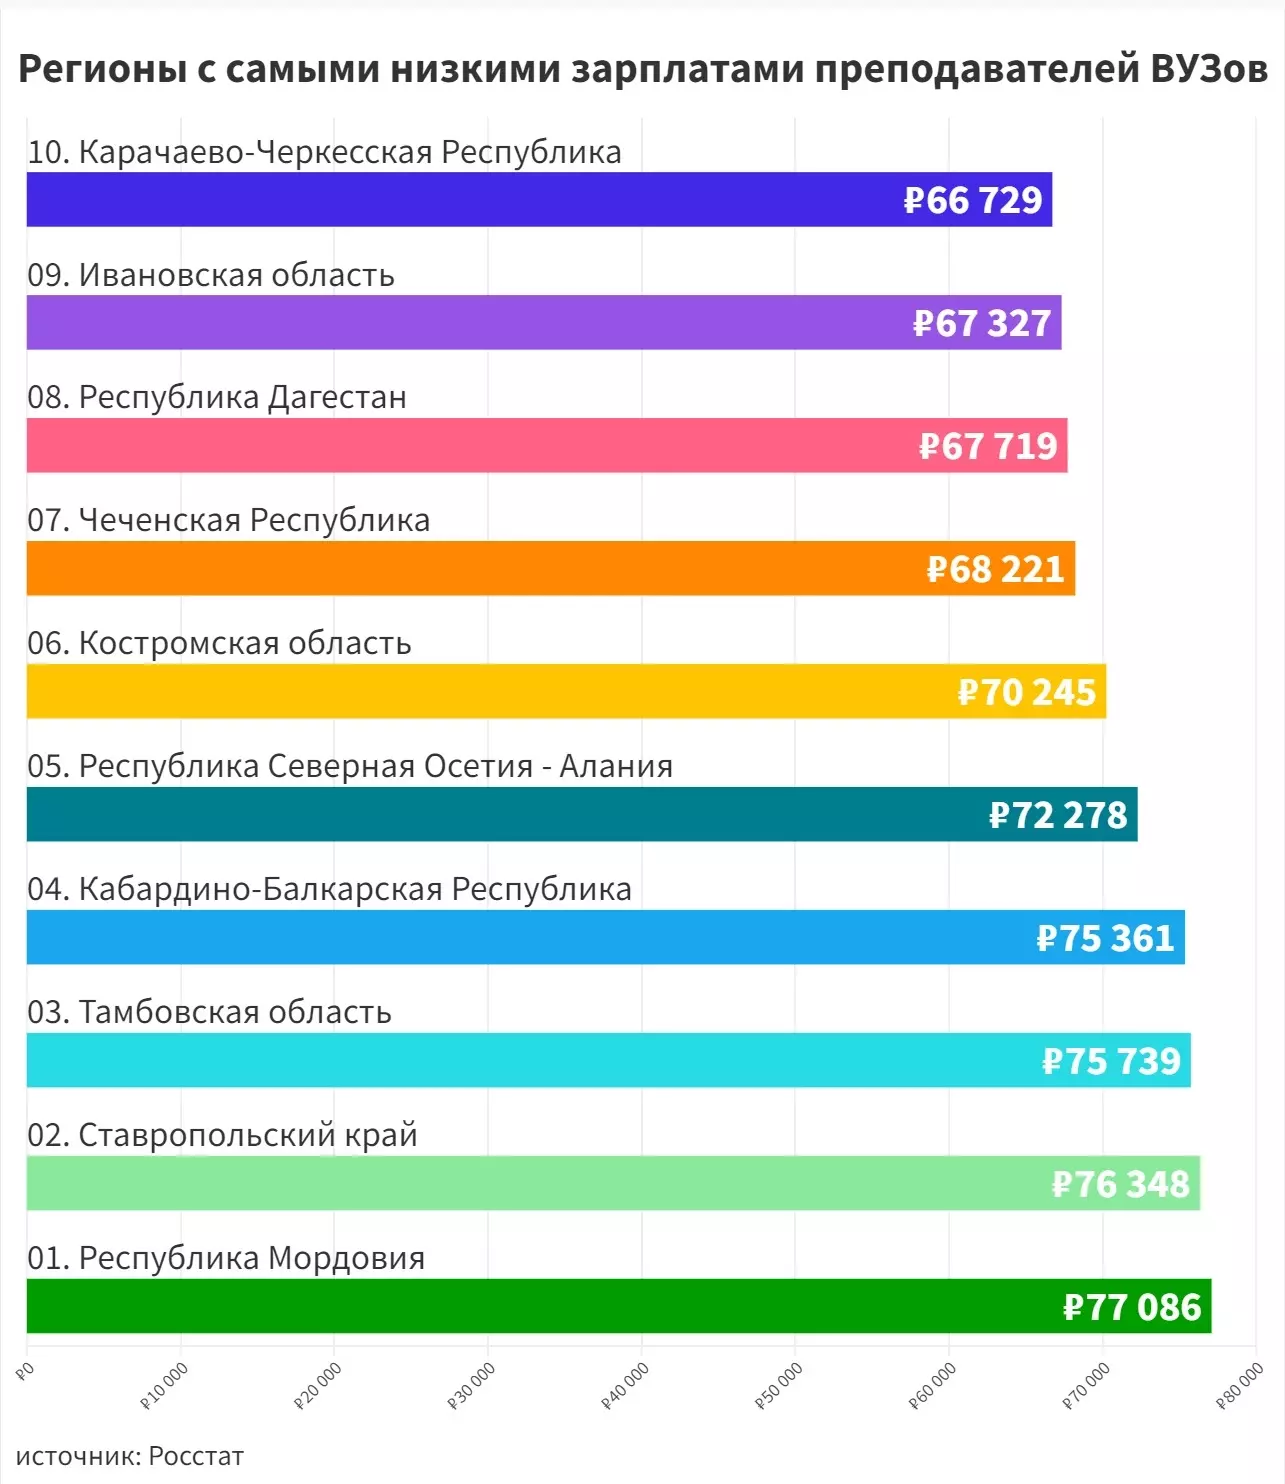 Самые низкие зарплаты преподаватели получают в Карачаево-Черкесской республике